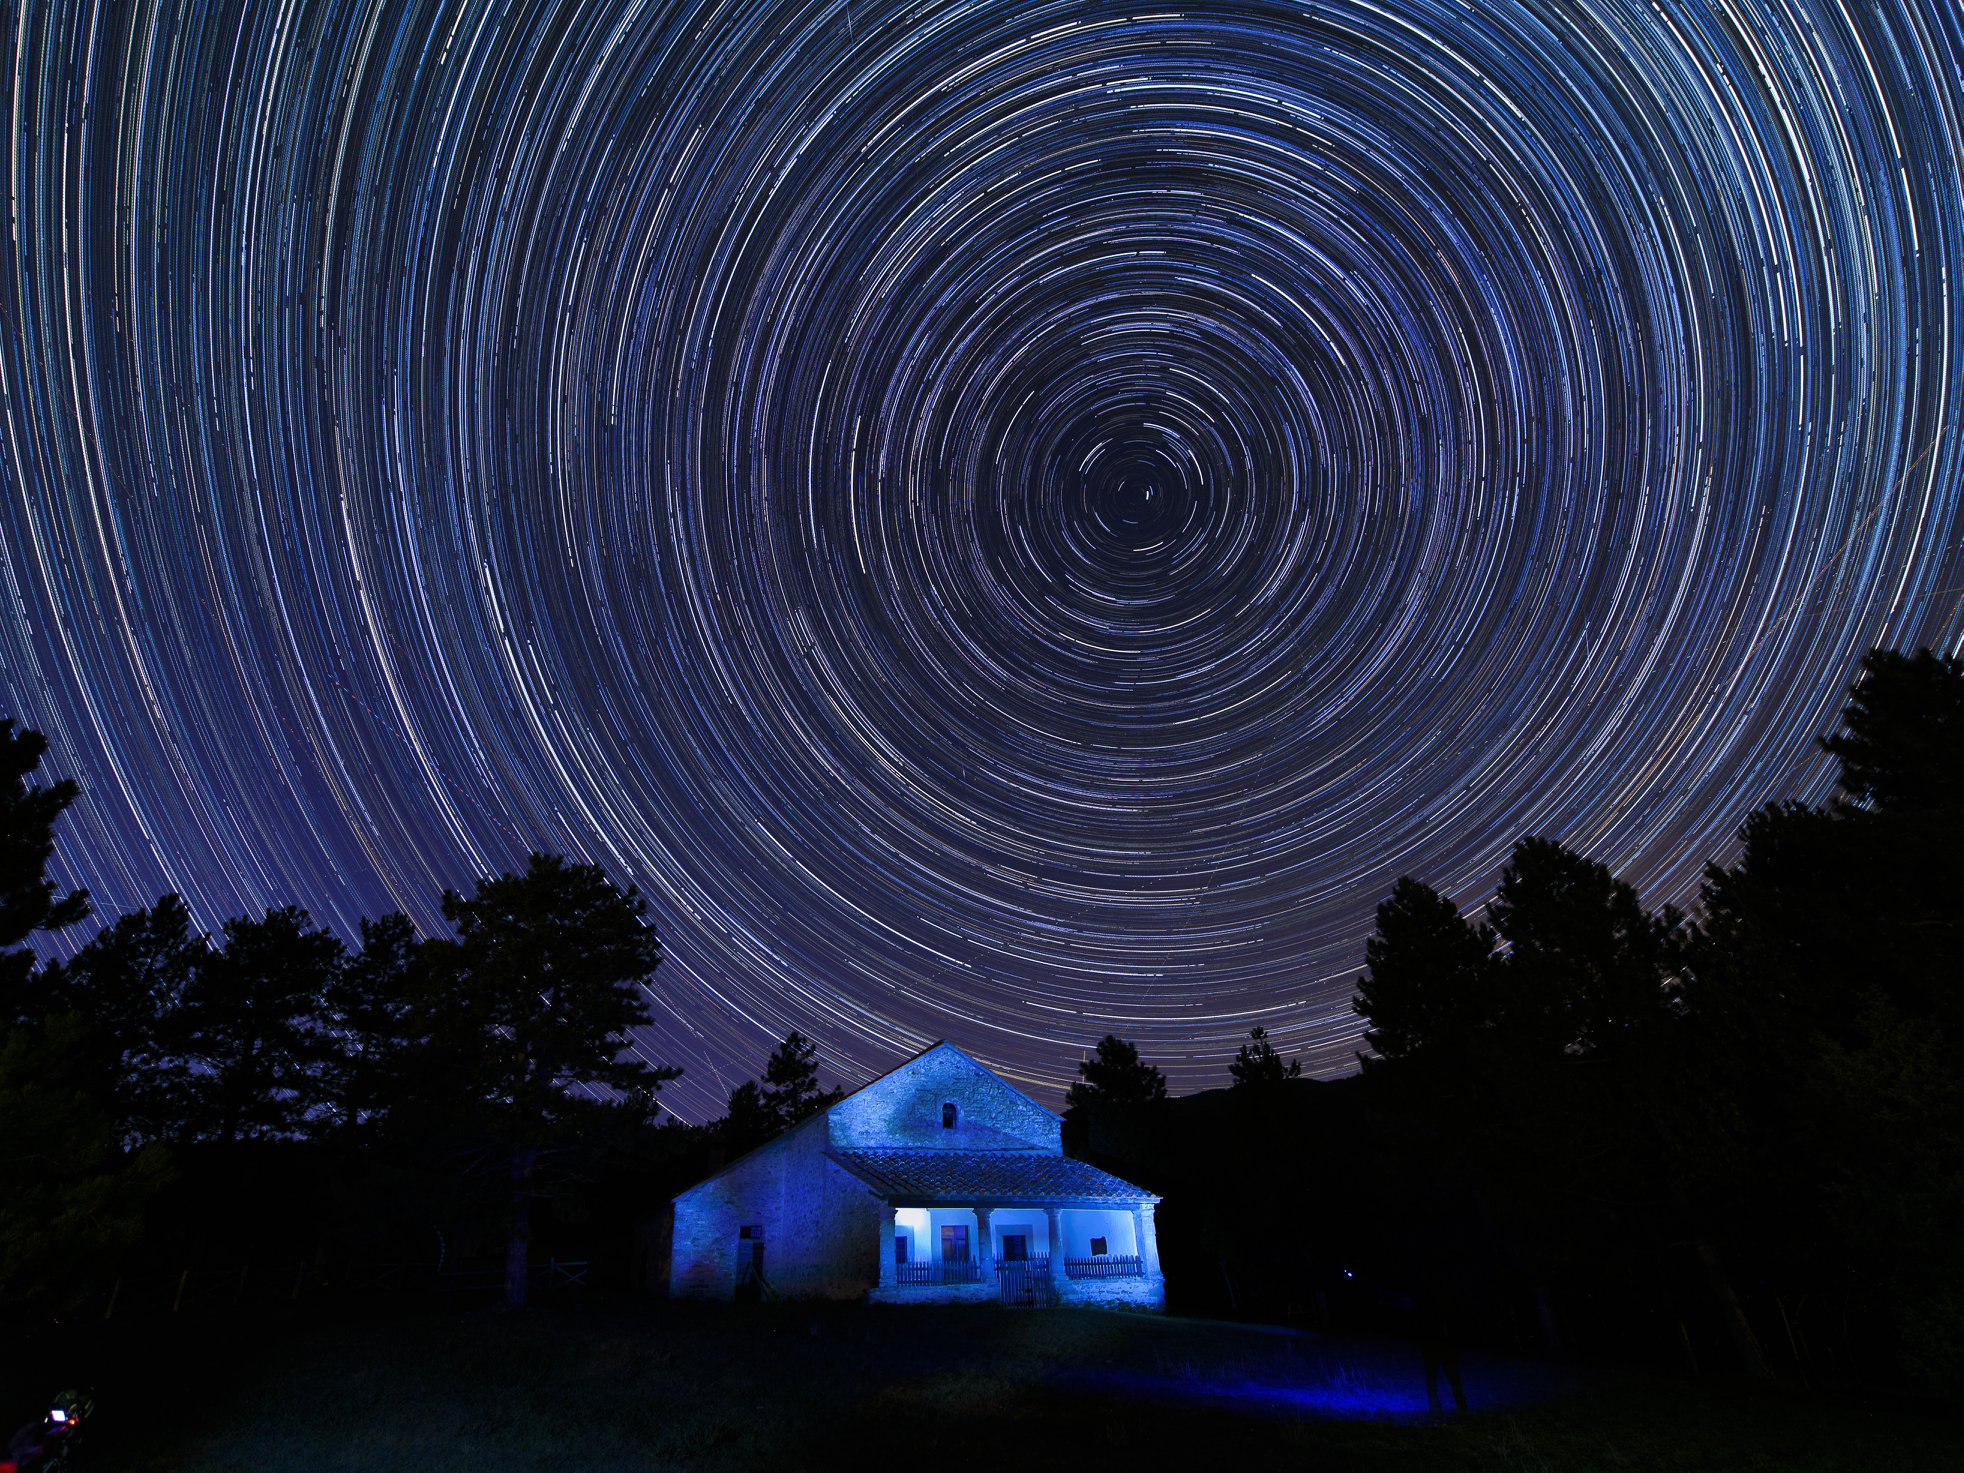 Notte stellata a Stia: le “trame” del firmamento, da Van Gogh al Planetario del Parco Nazionale delle Foreste Casentinesi